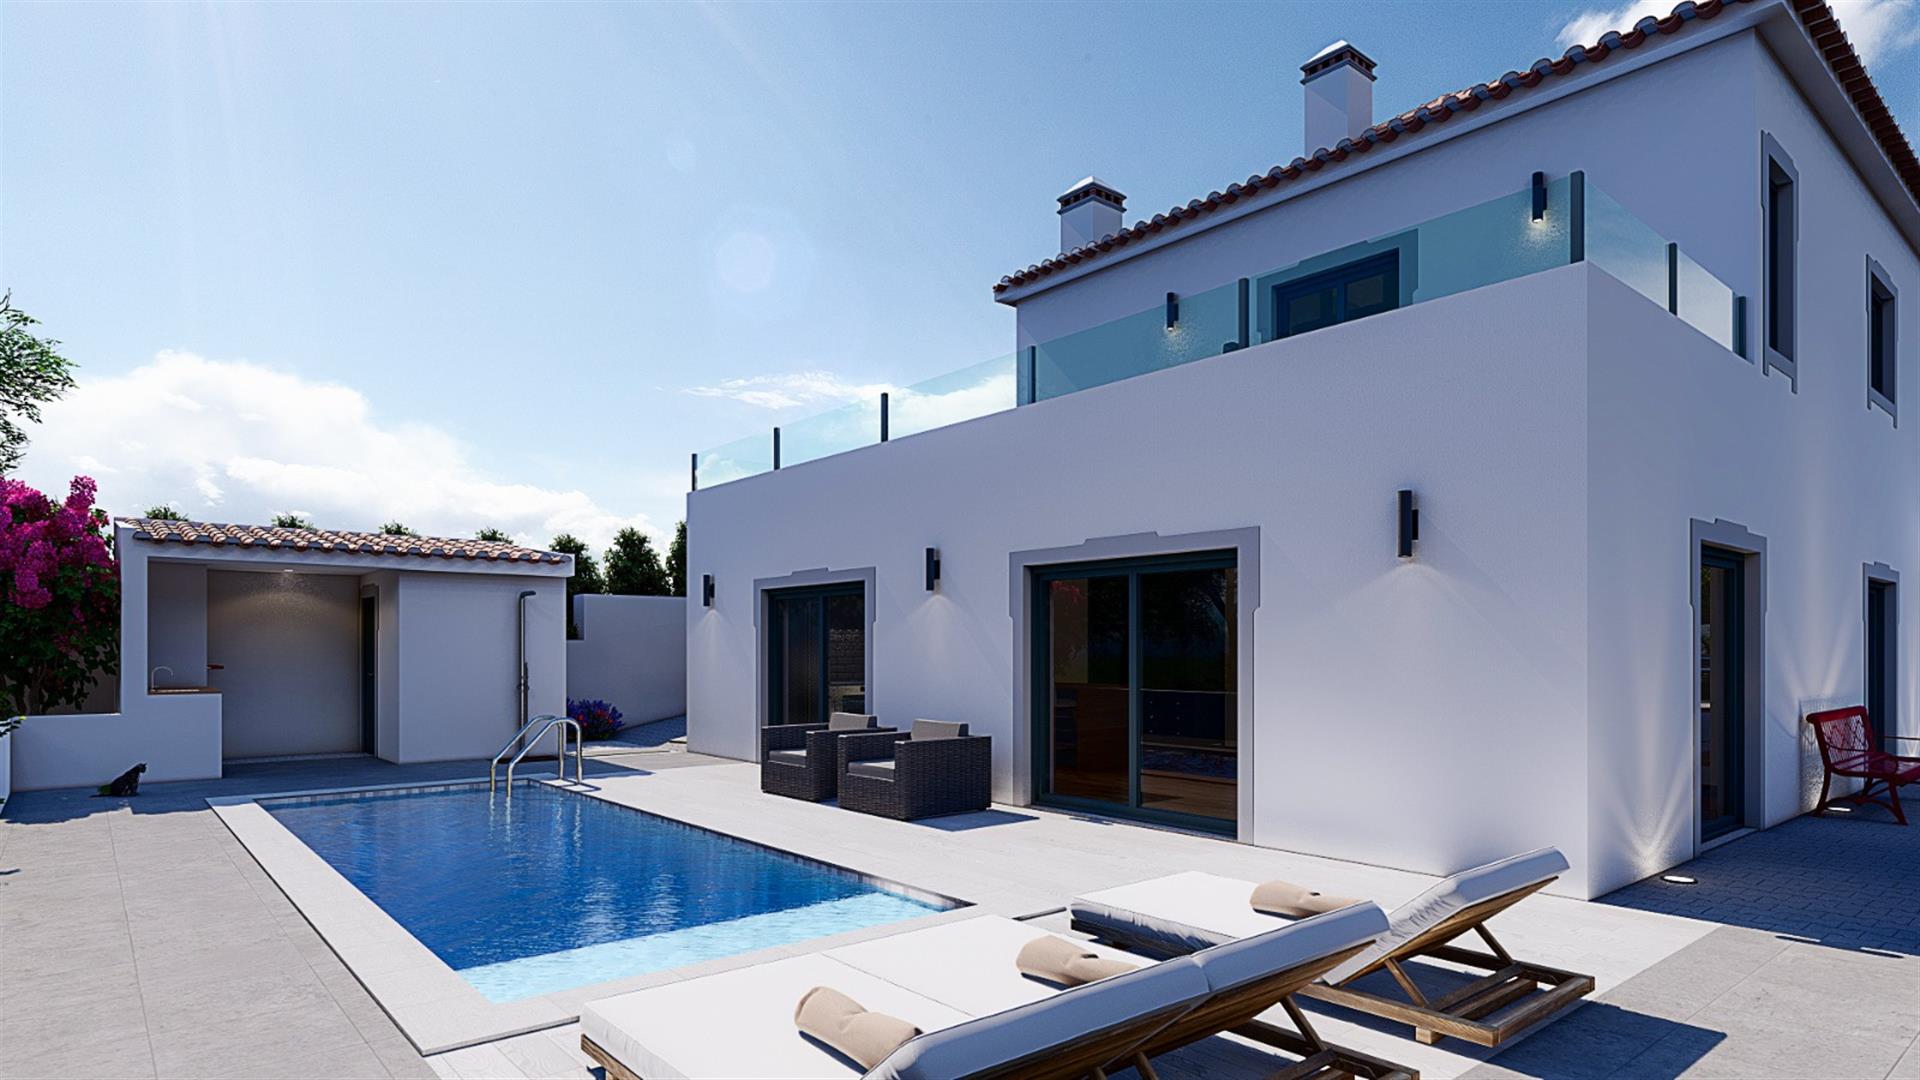 Ausgezeichnete neue T4-Villa auf dem Land und in der Nähe des Strandes und der Stadt Lissabon.